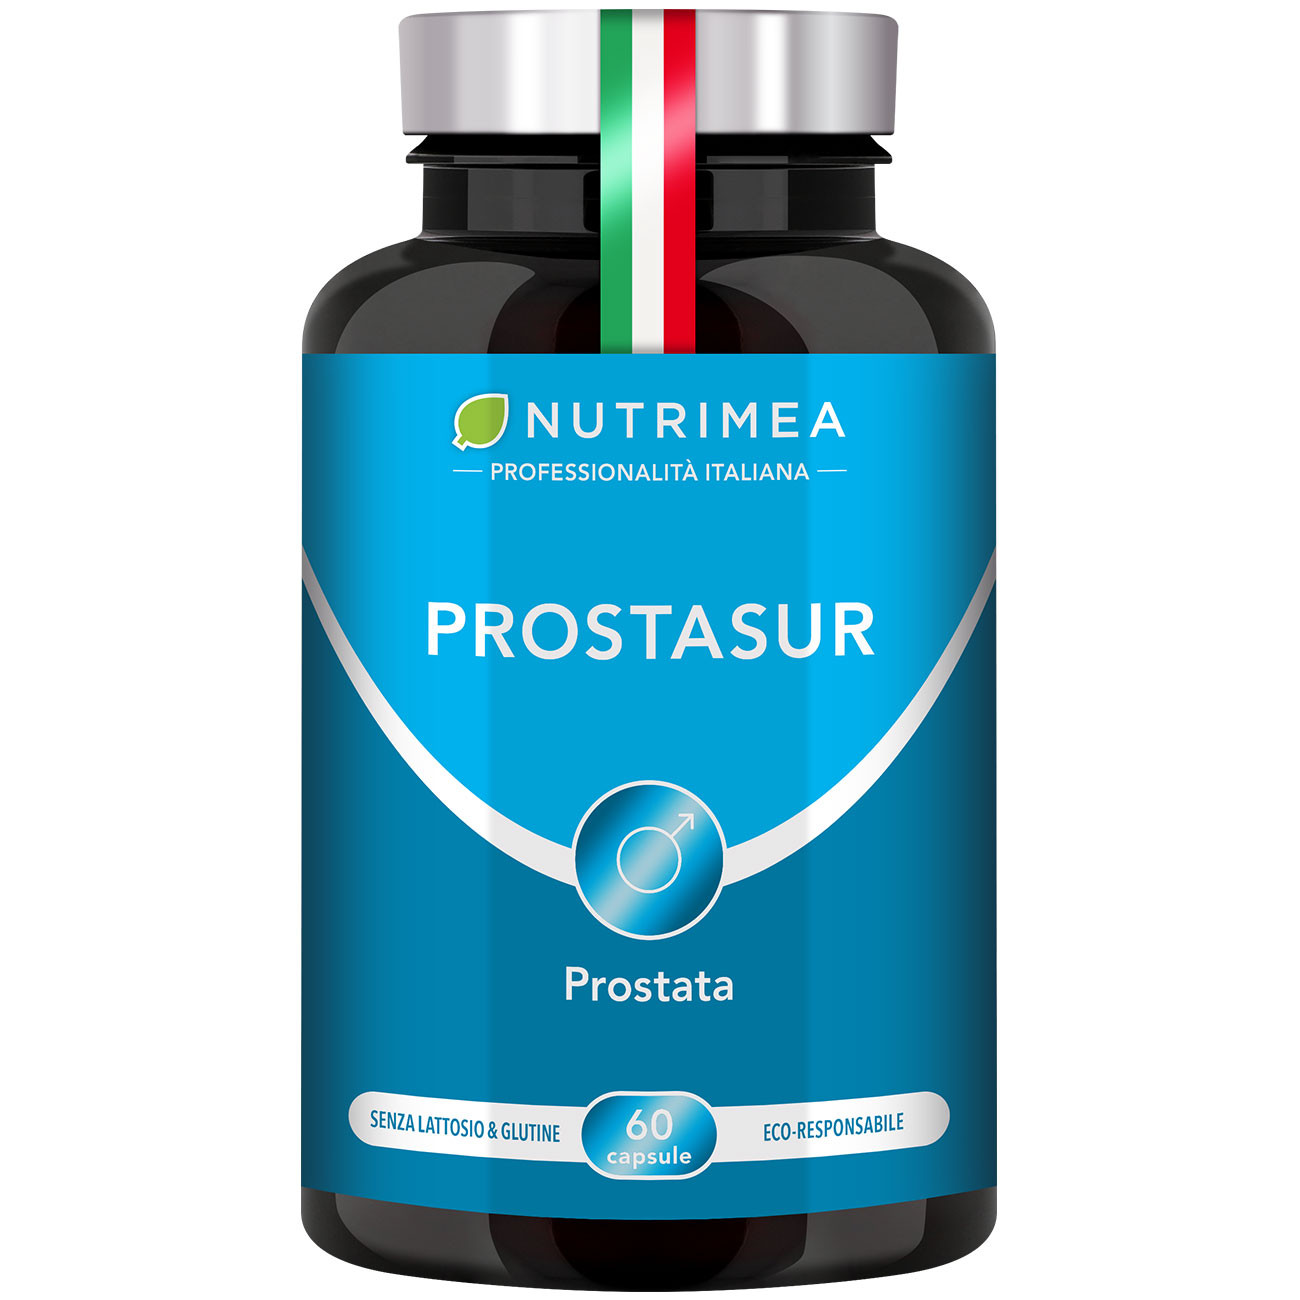 Immagine della confezione dell'integratore PROSTASUR - Per la Prostata